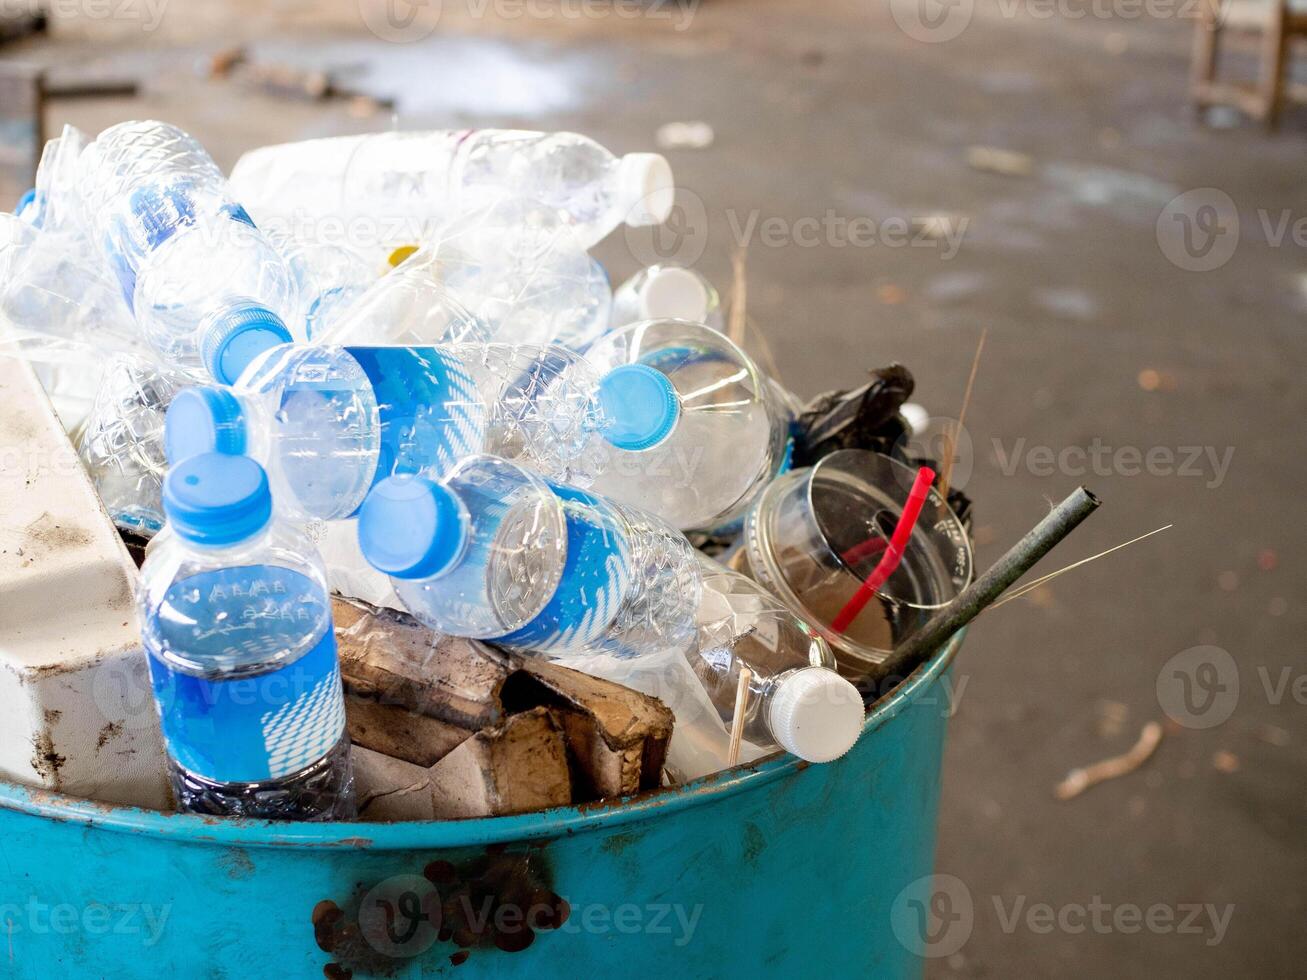 vuilnis recycling milieu plastic verspilling verontreiniging ecologie uitschot hergebruik eco fles houder schoon groen papier onzin concept natuur bak symbool biologisch aarde gesprek industrie verwijdering sorteren foto